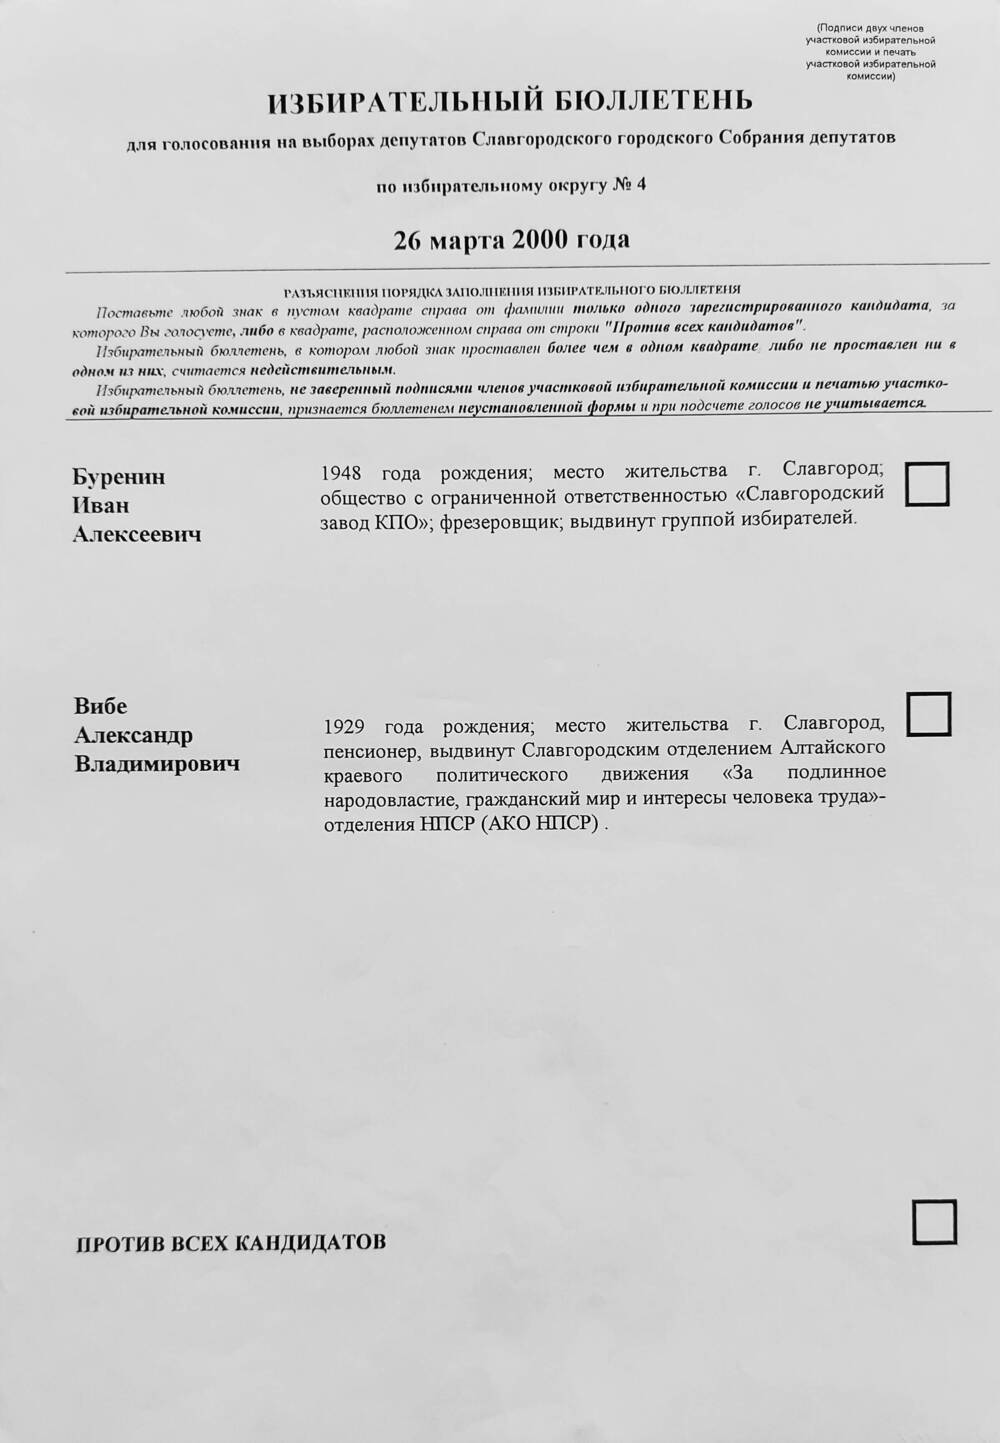 Бюллетень избирательный для голосования на выборах депутатов Славгородского городского Собрания депутатов по избирательному округу № 4 от 26 марта 2000 года.